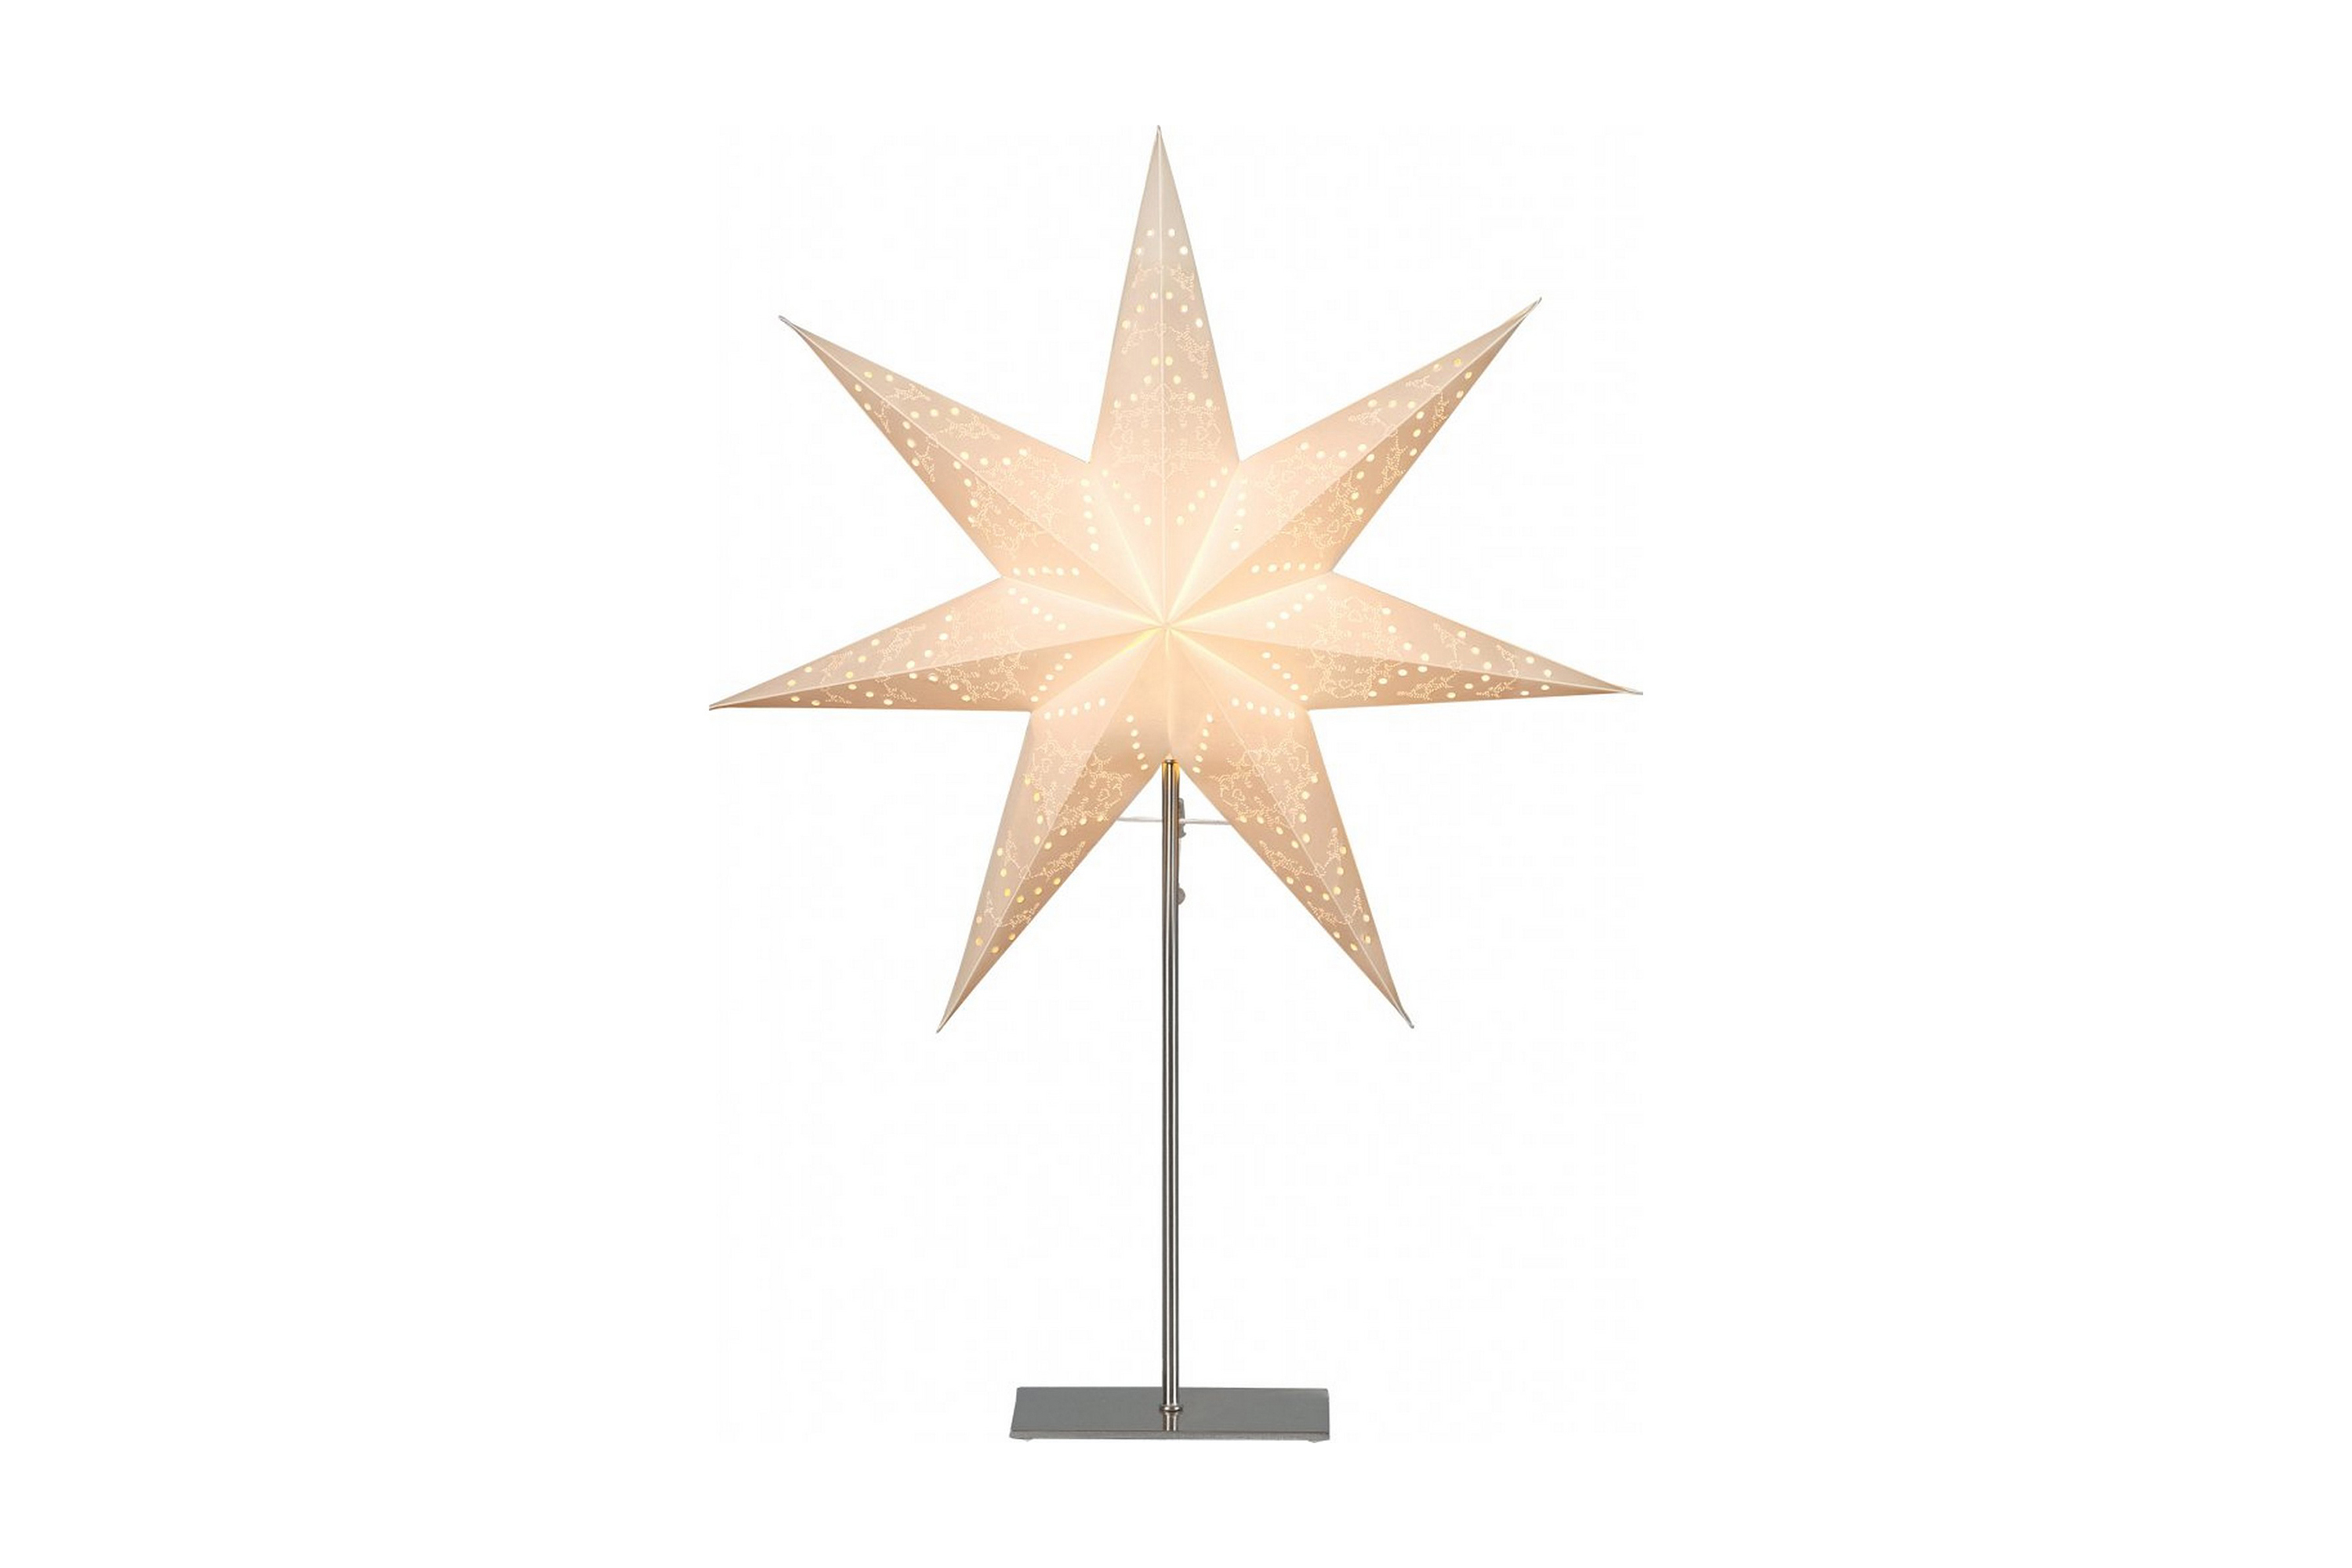 Sensy bordsstjärna 78cm - Star Trading